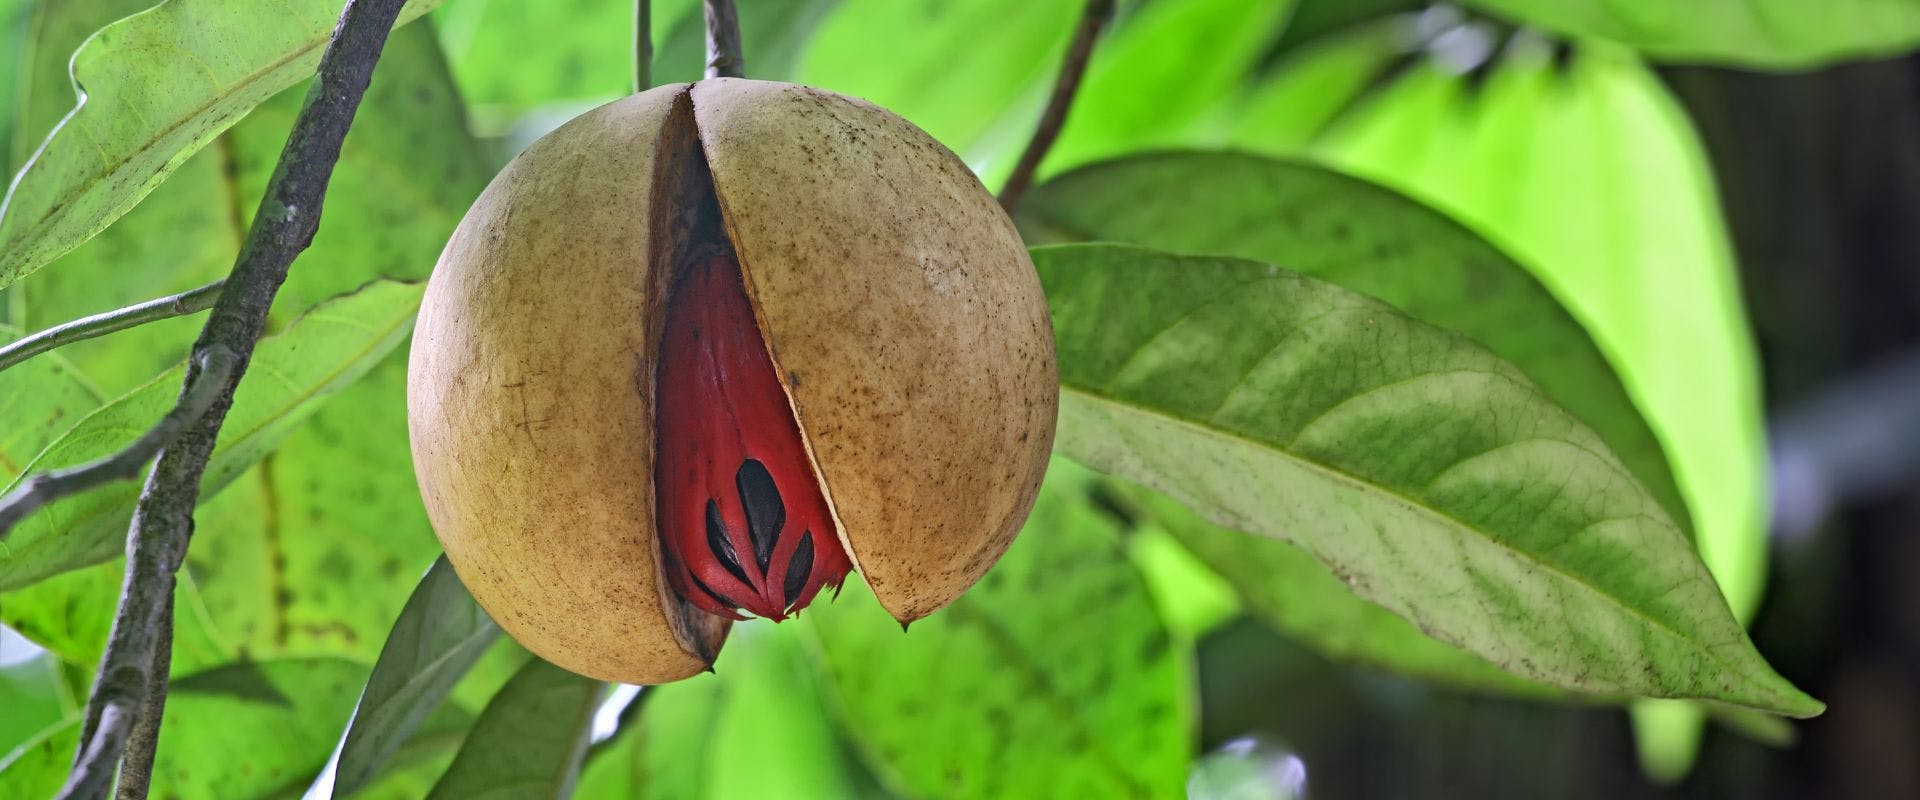 Nutmeg fruit on tree